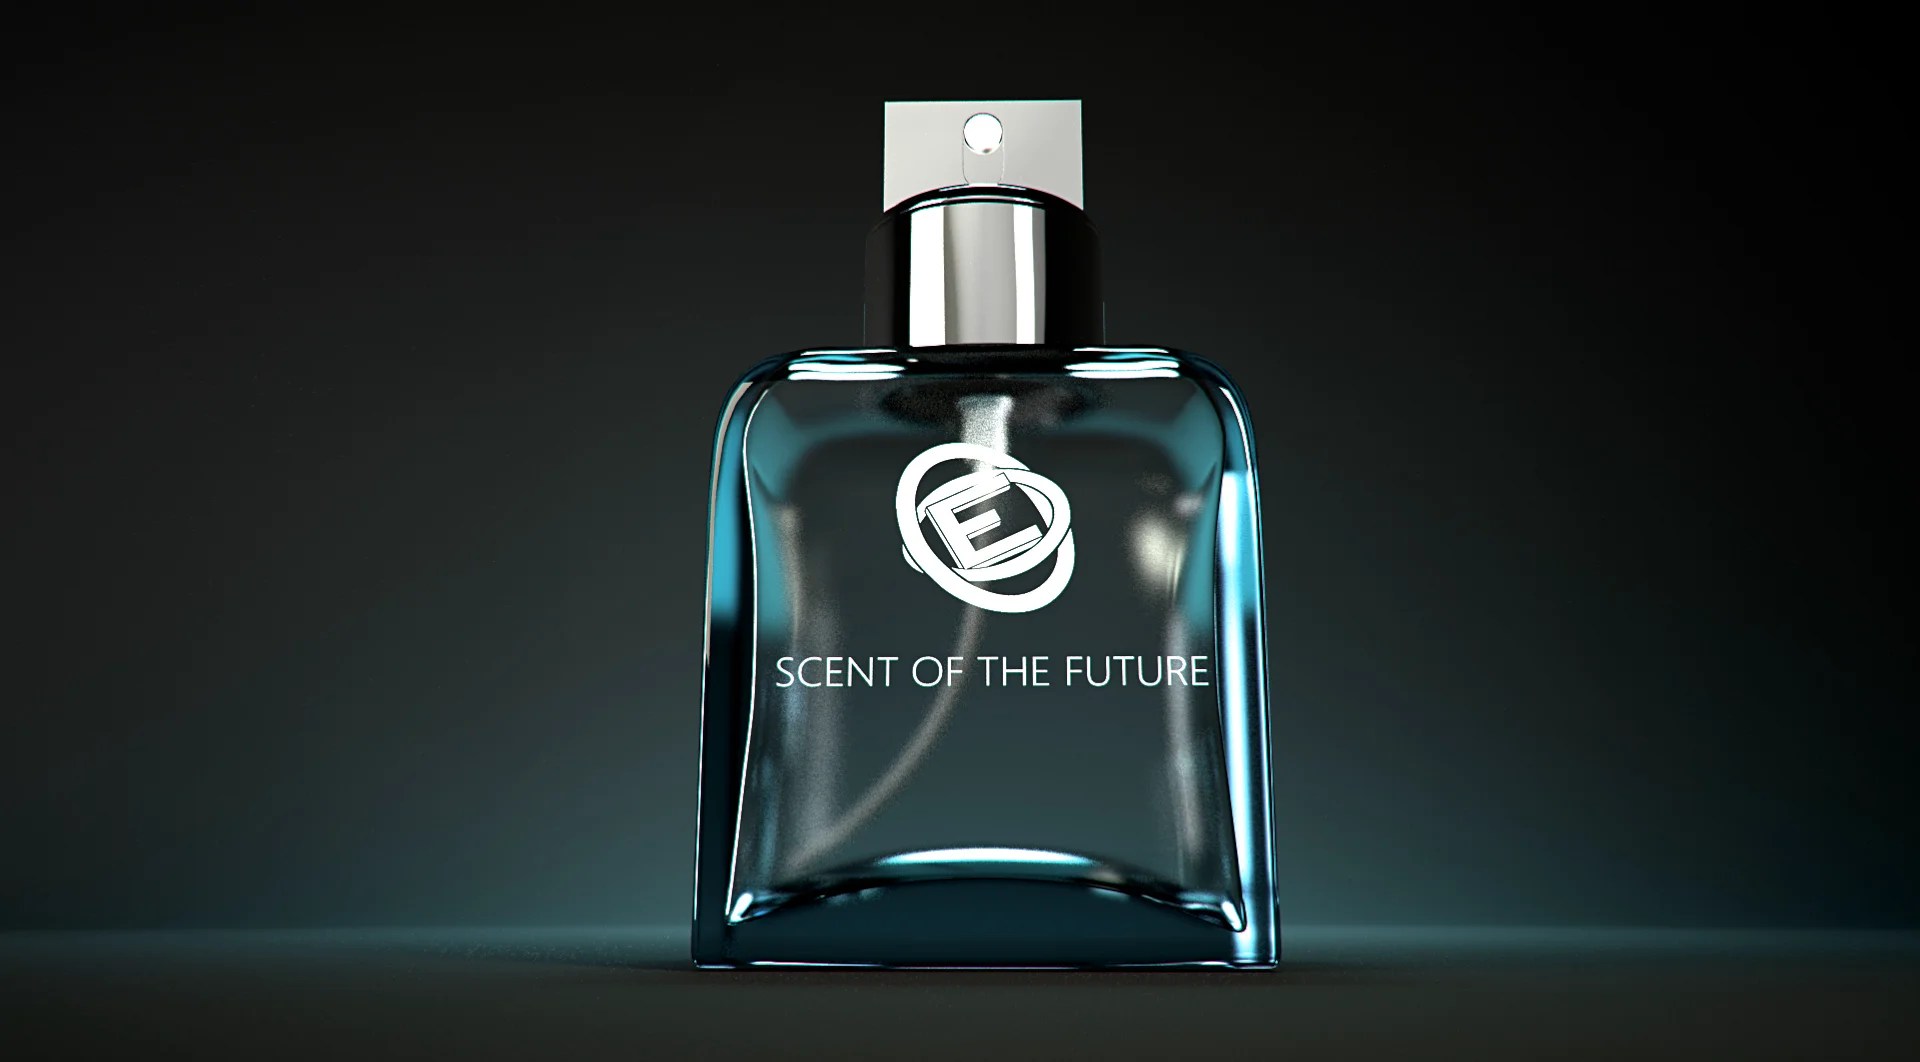 Blender tutorial: modeling perfume flask - part 1 on Vimeo